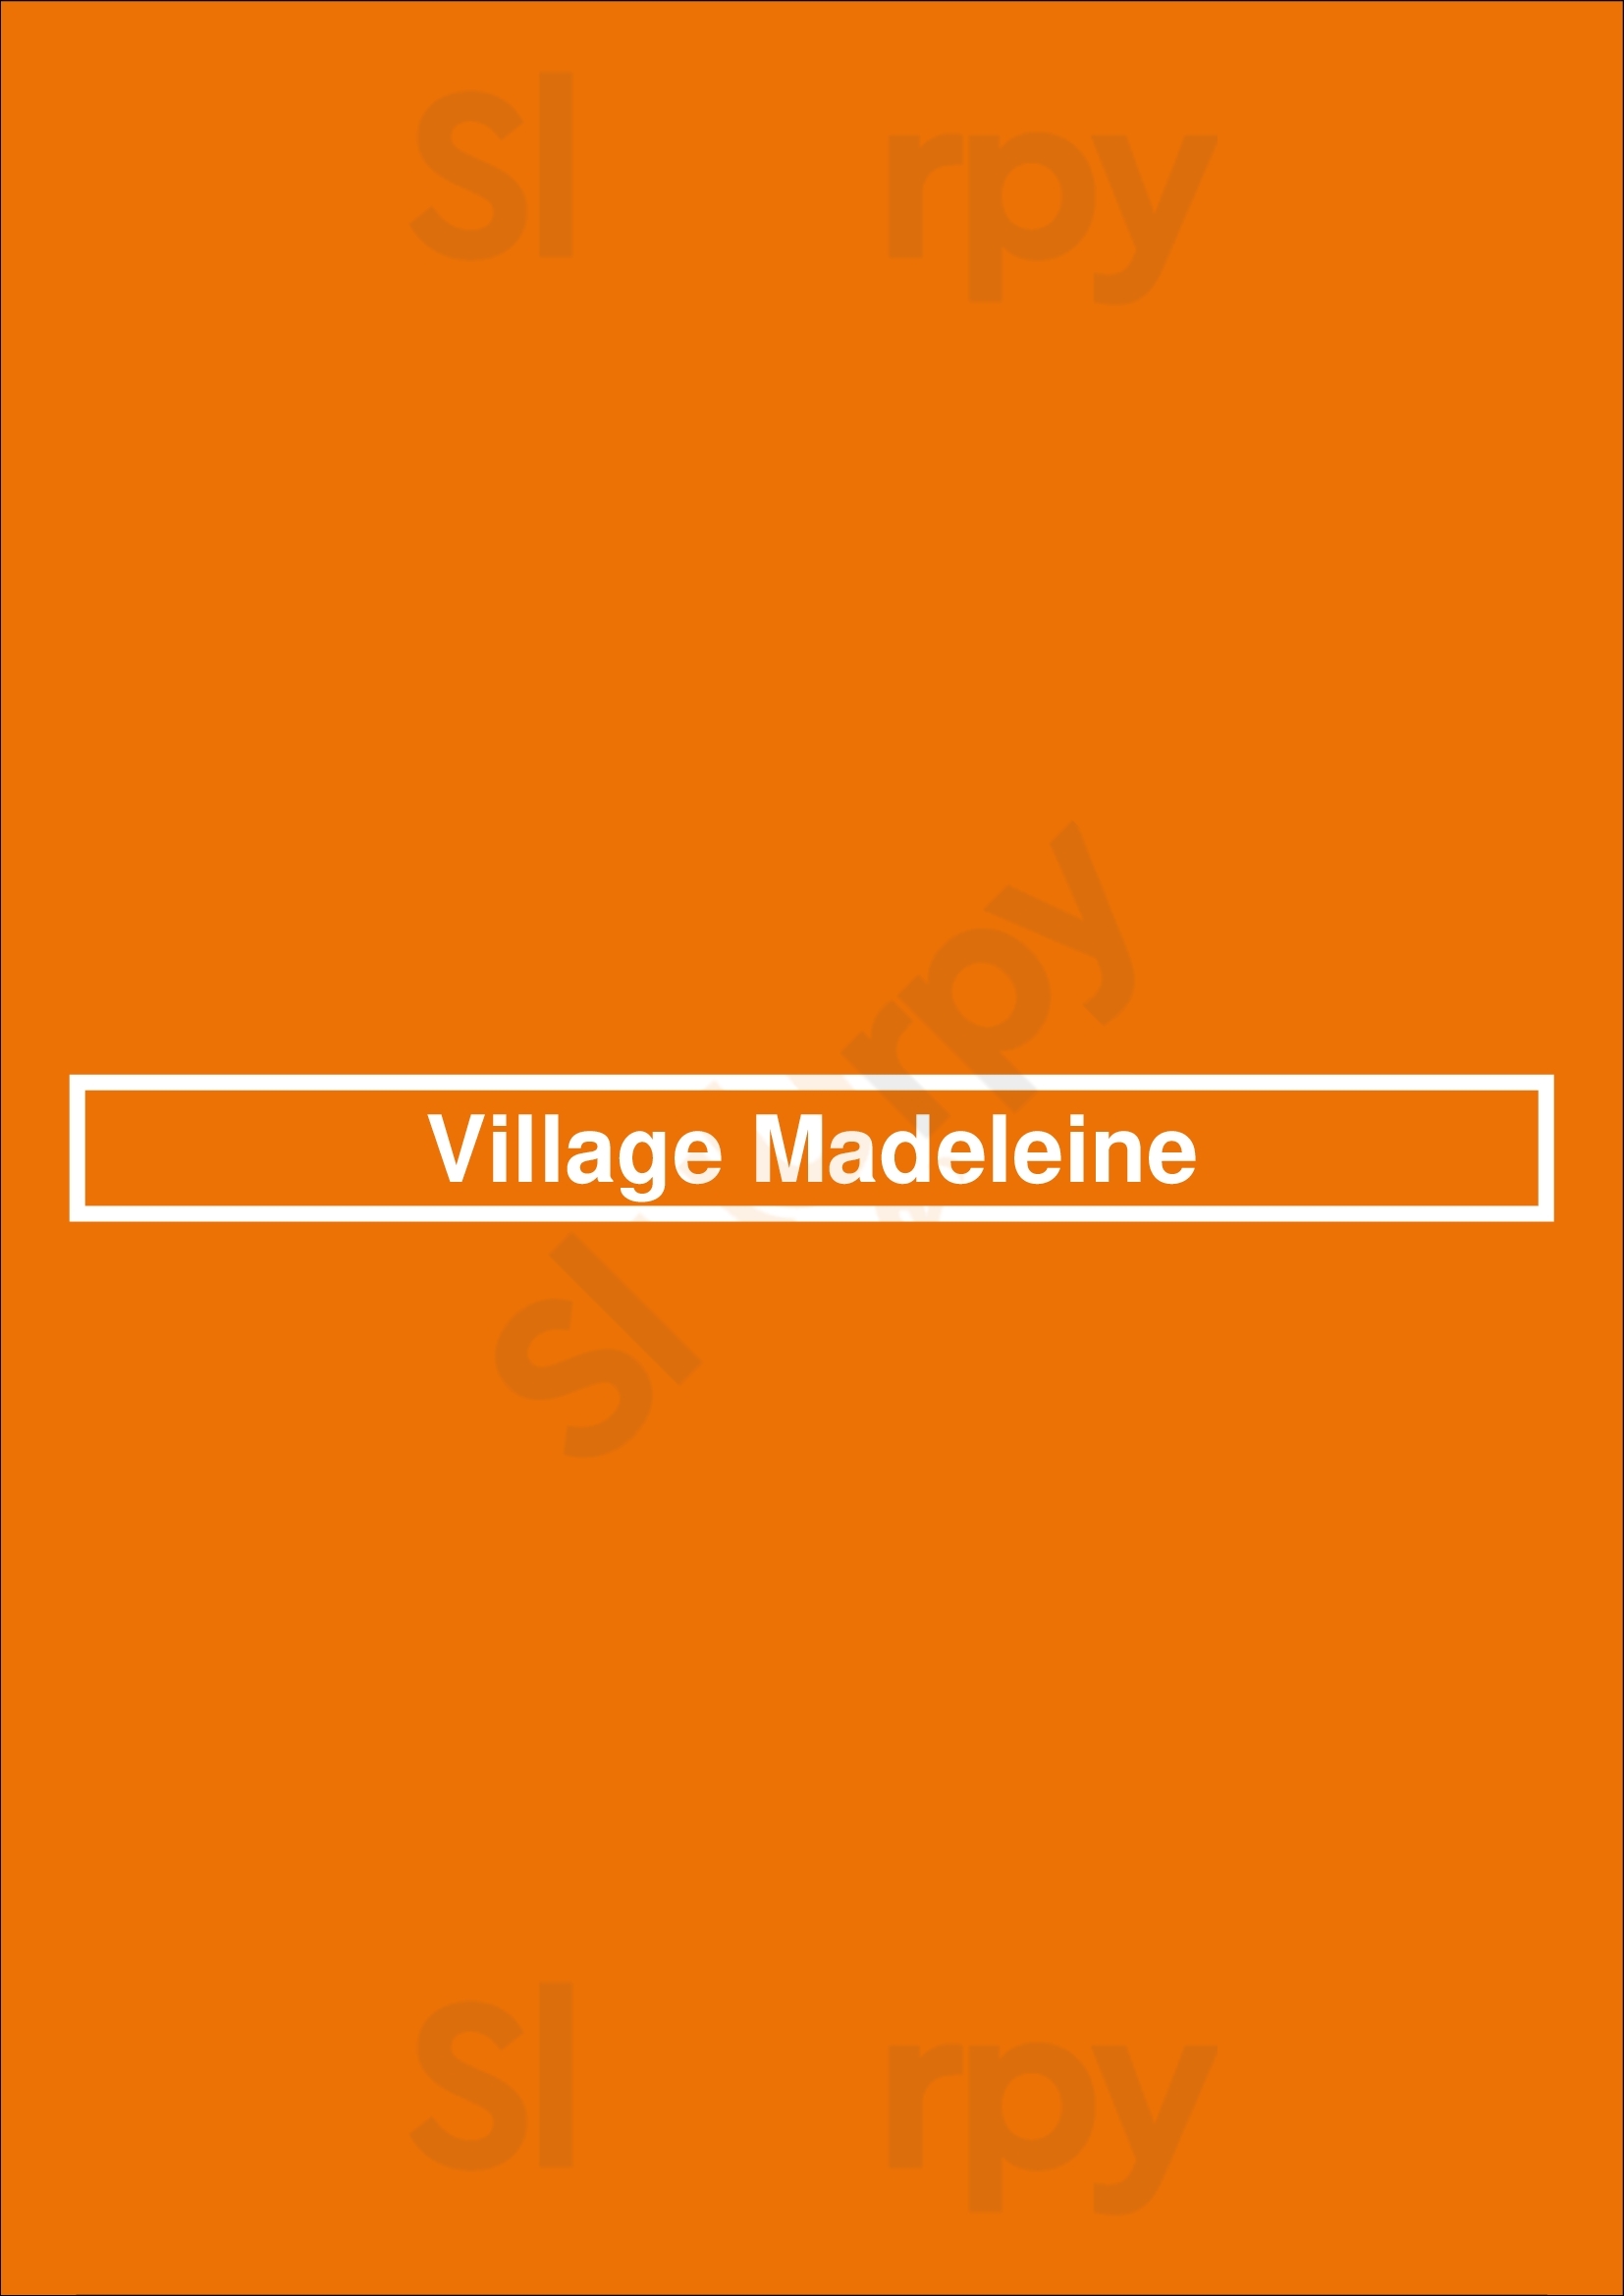 Village Madeleine Paris Menu - 1